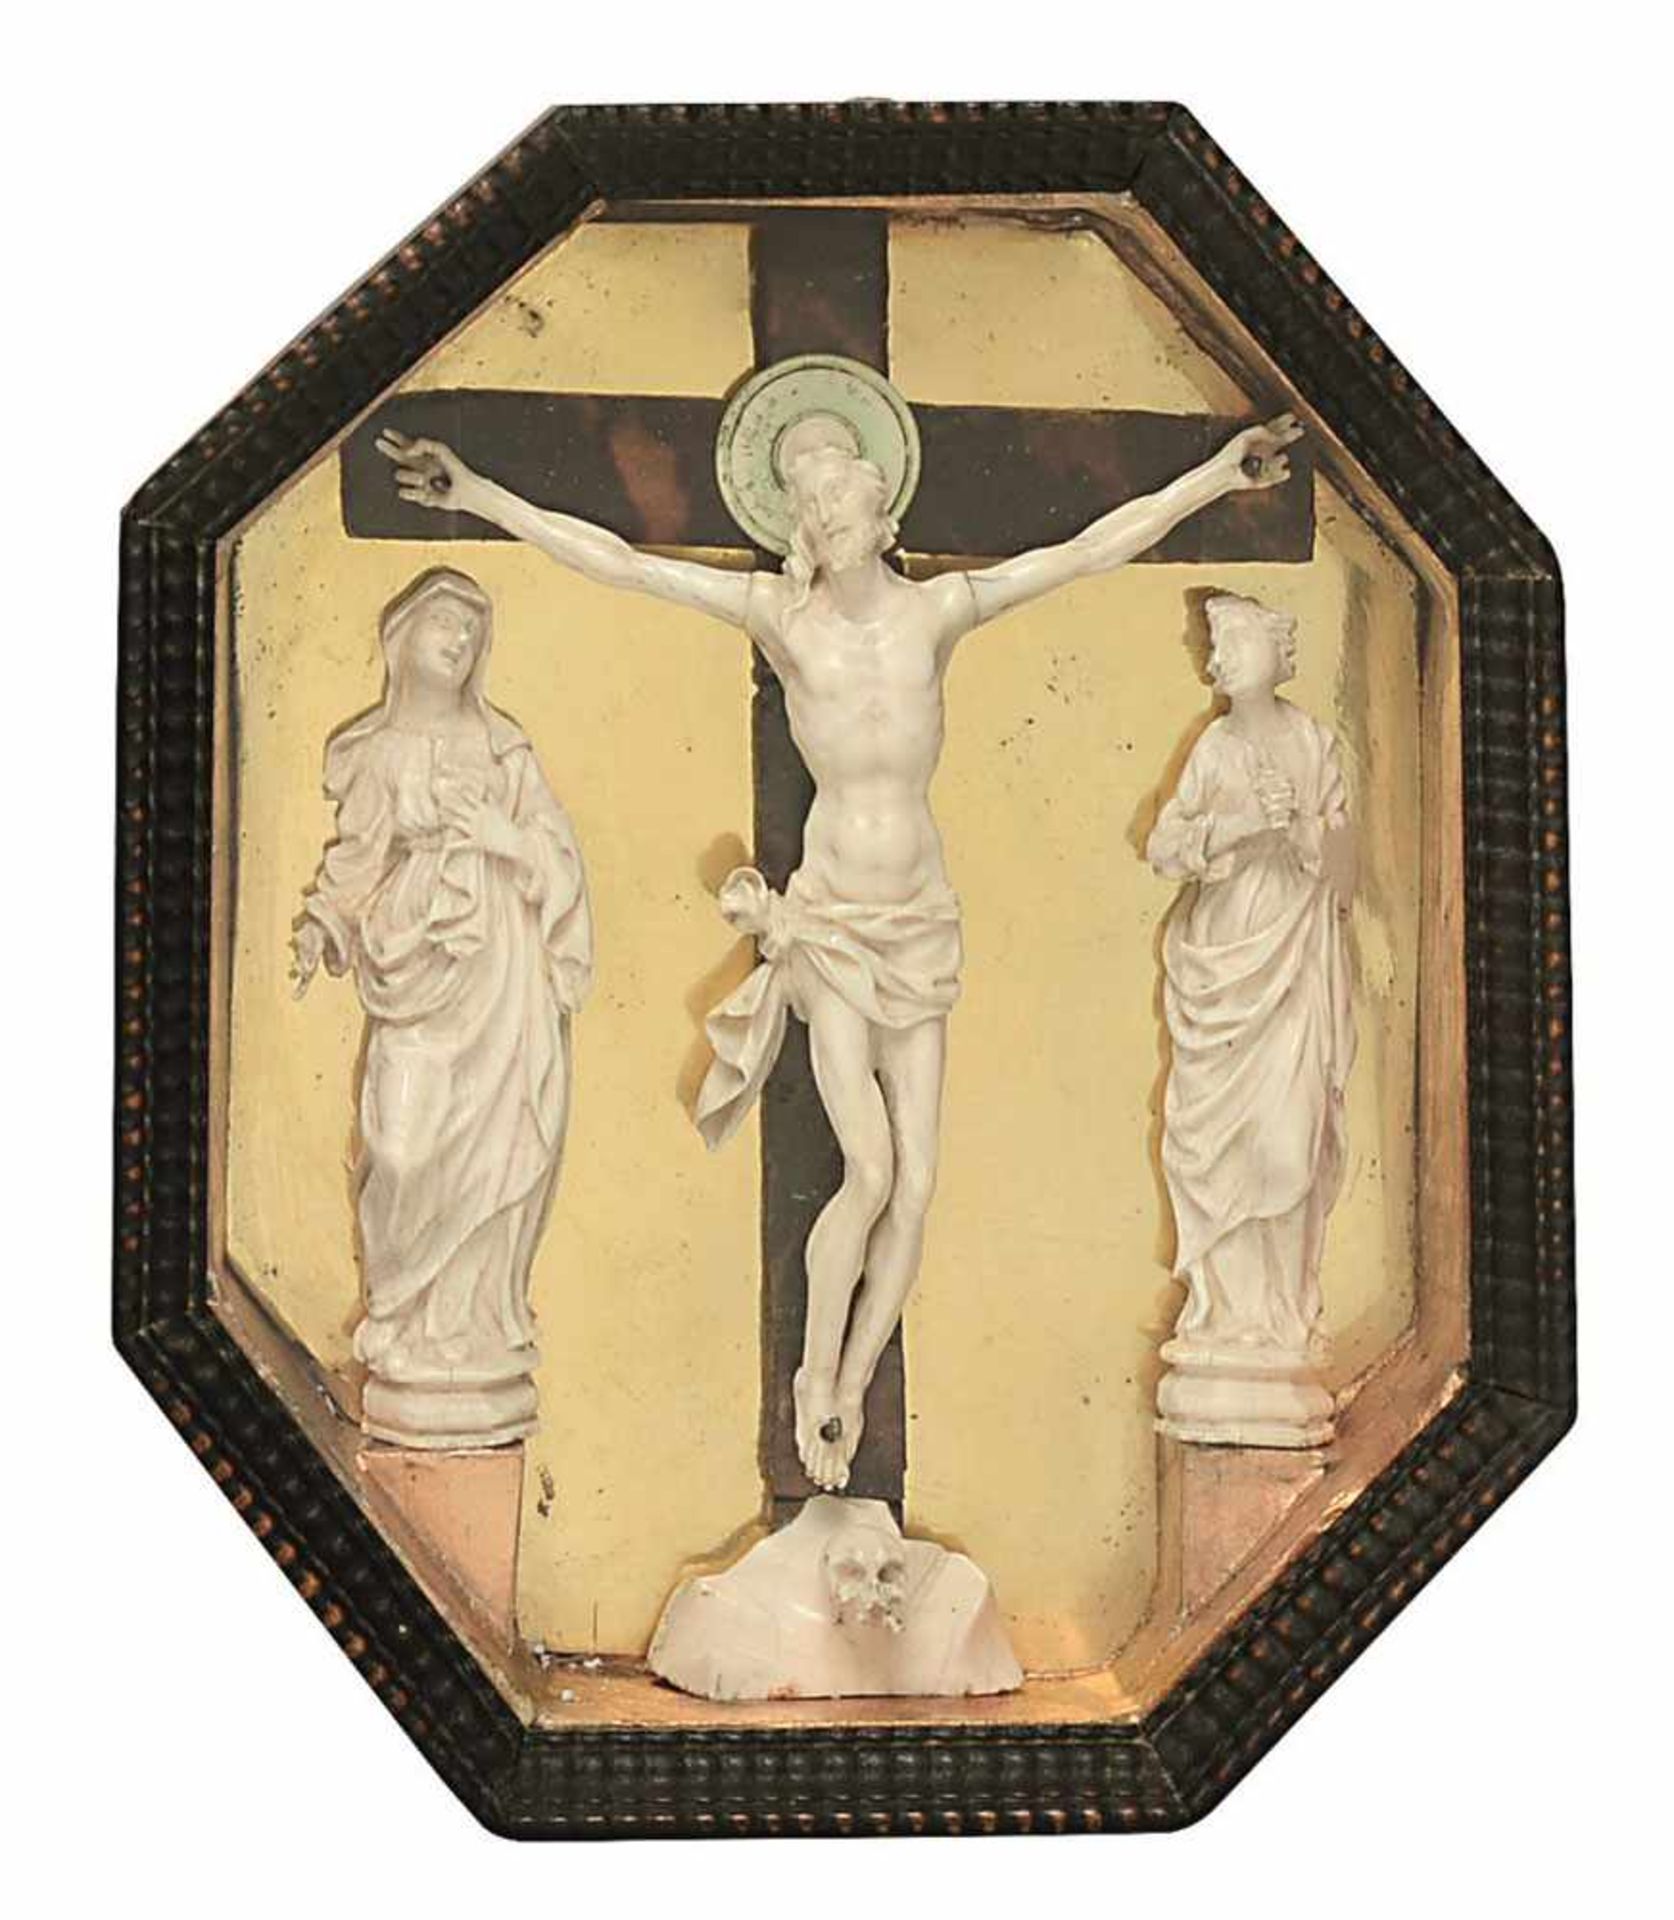 Kreuzigung Christi mit Maria und Johannes Süddeutsch, wohl 17. Jh. Elfenbein, geschnitzt. Kruzifix